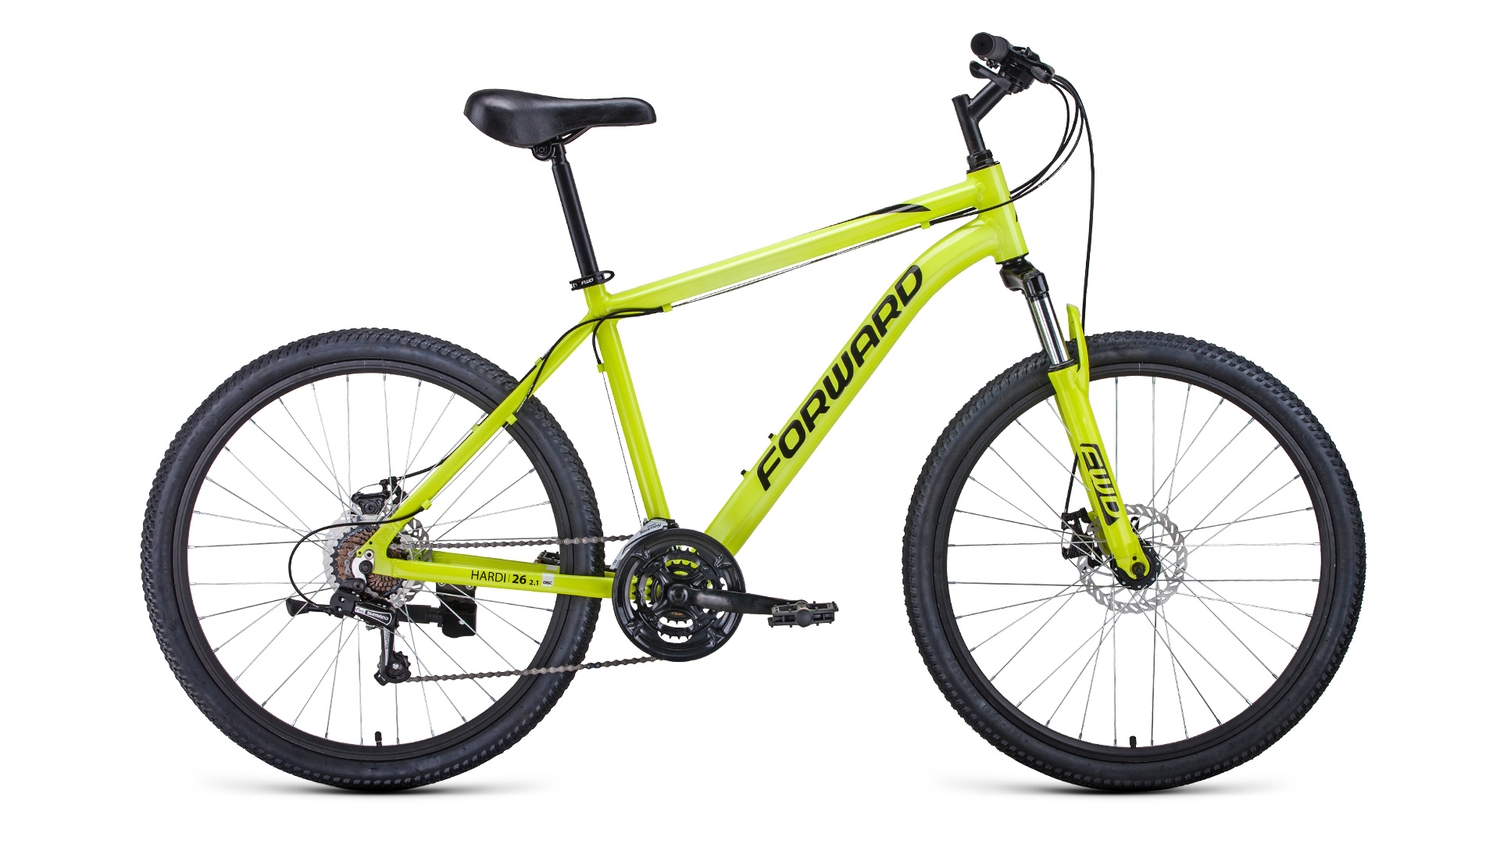 Горный велосипед Forward Hardi 26 2.1 D, год 2022, цвет Желтый-Черный, ростовка 18